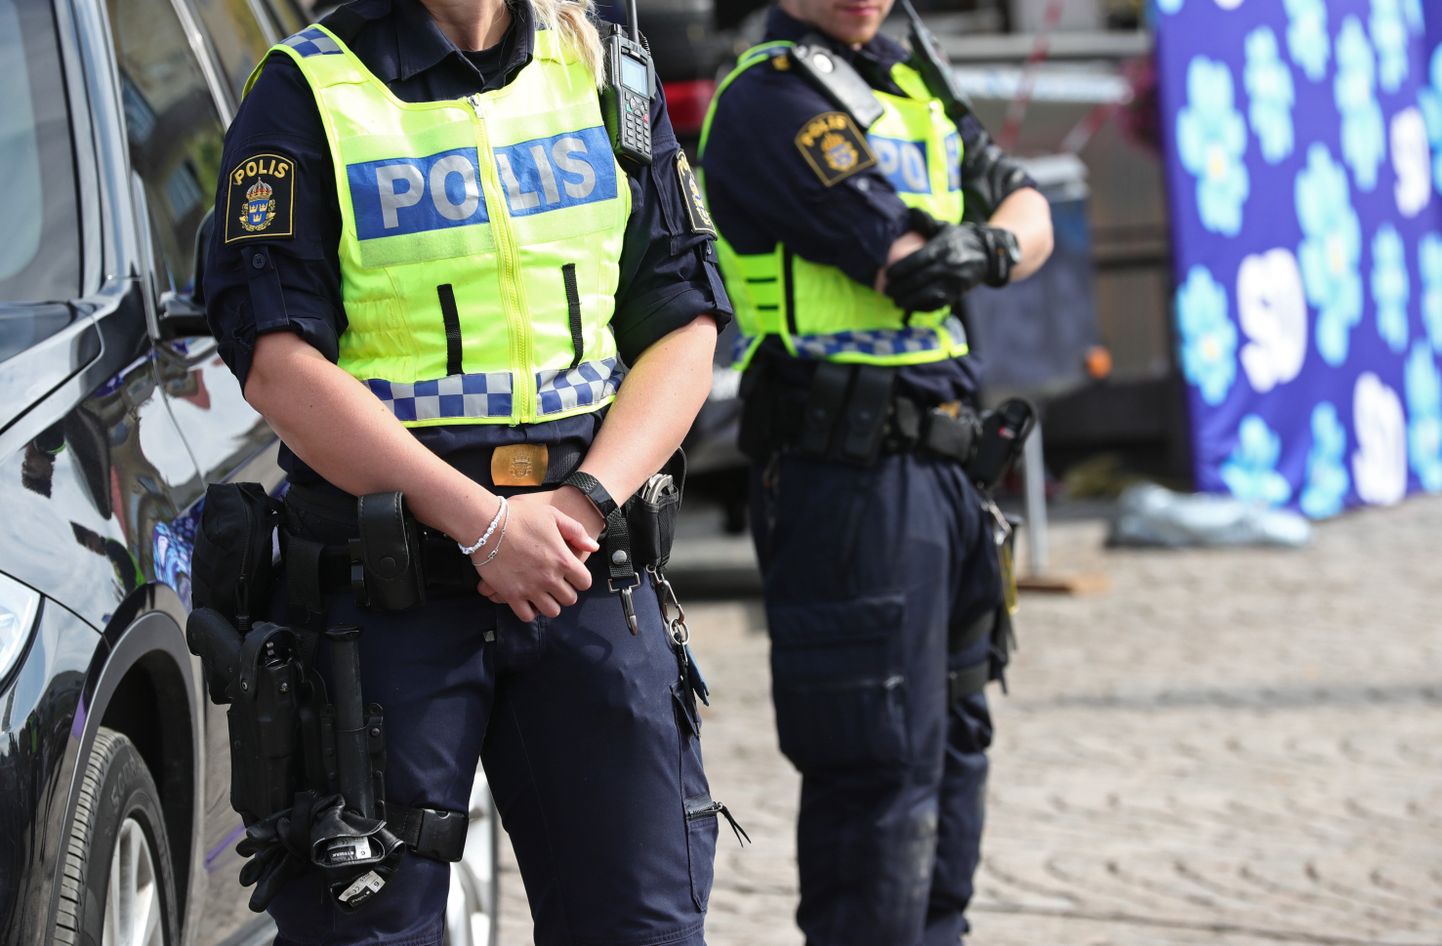 Rootsi politsei. Pilt on illustreeriv